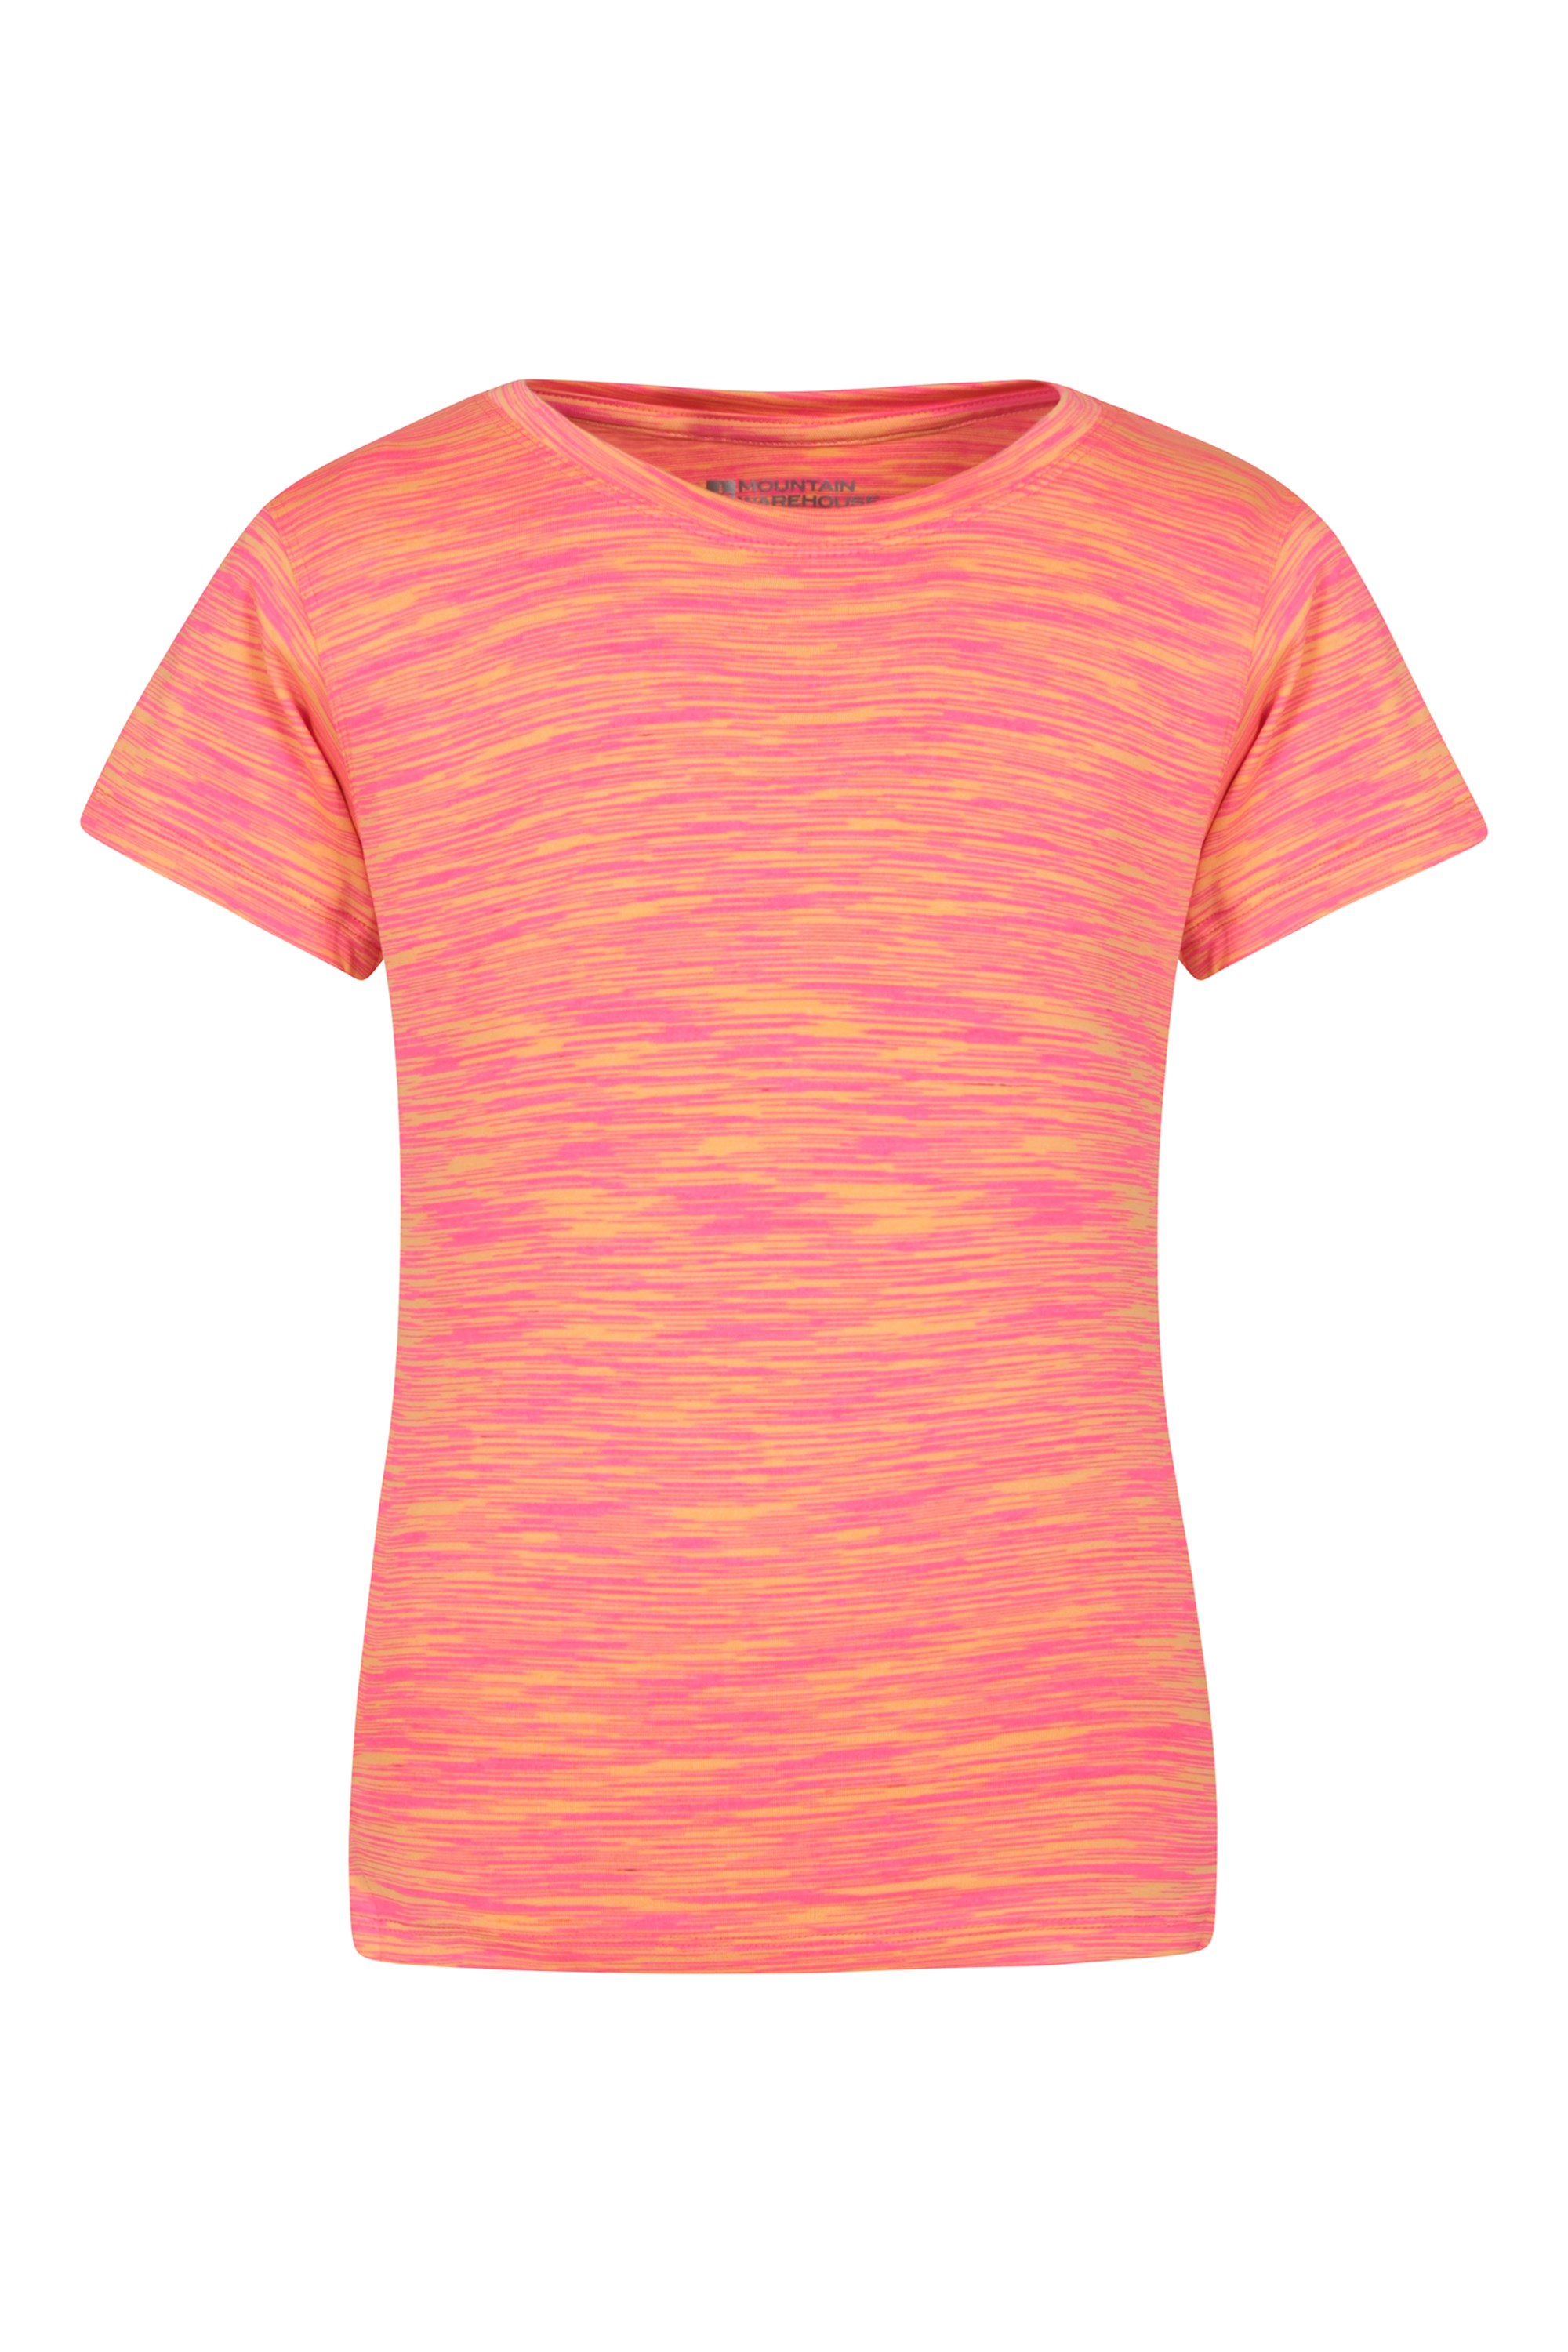 T-shirt Space Dye fille - Rose